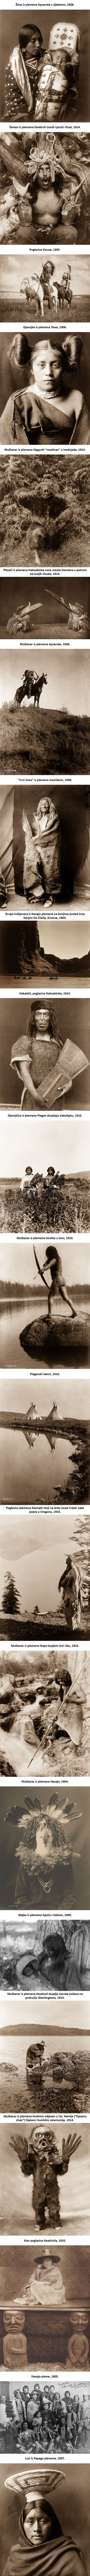 Rijetke fotografije iz ranog 20. stoljeća pokazuju kako su Indijanci živjeli prije 100 godina